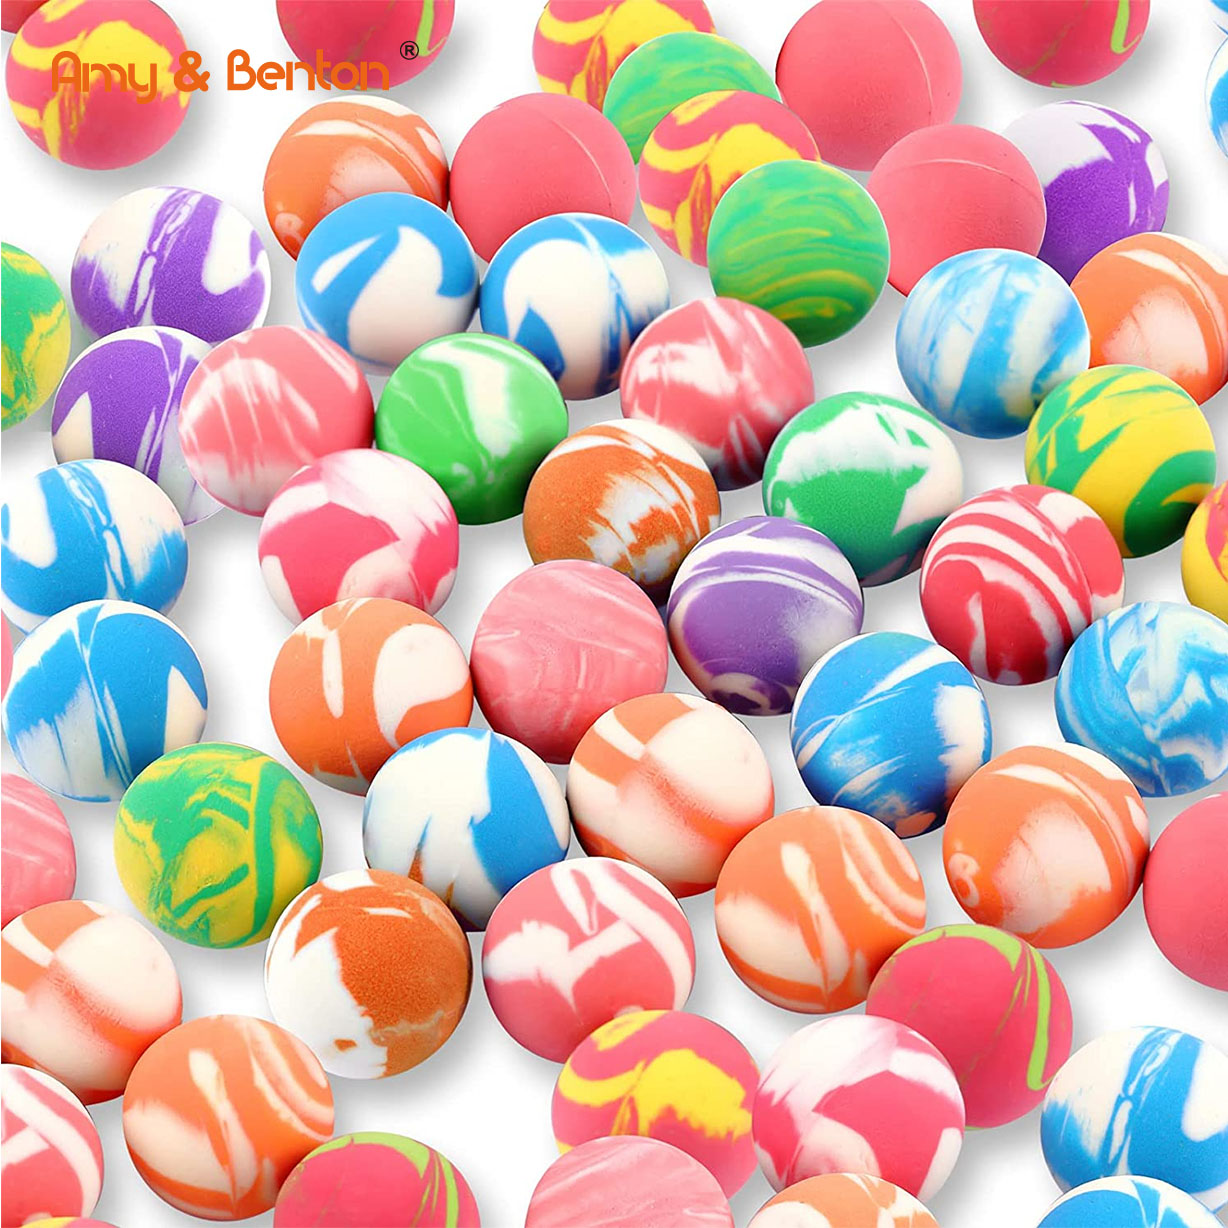 Kleine hüpfende Bälle aus Gummi, hohe springende Bälle, 27 mm große Neon-Hüpfbälle für Spielpreise, Partygeschenke, Verkaufsautomaten, Outdoor-Aktivitäten (mehrfarbiger Stil)